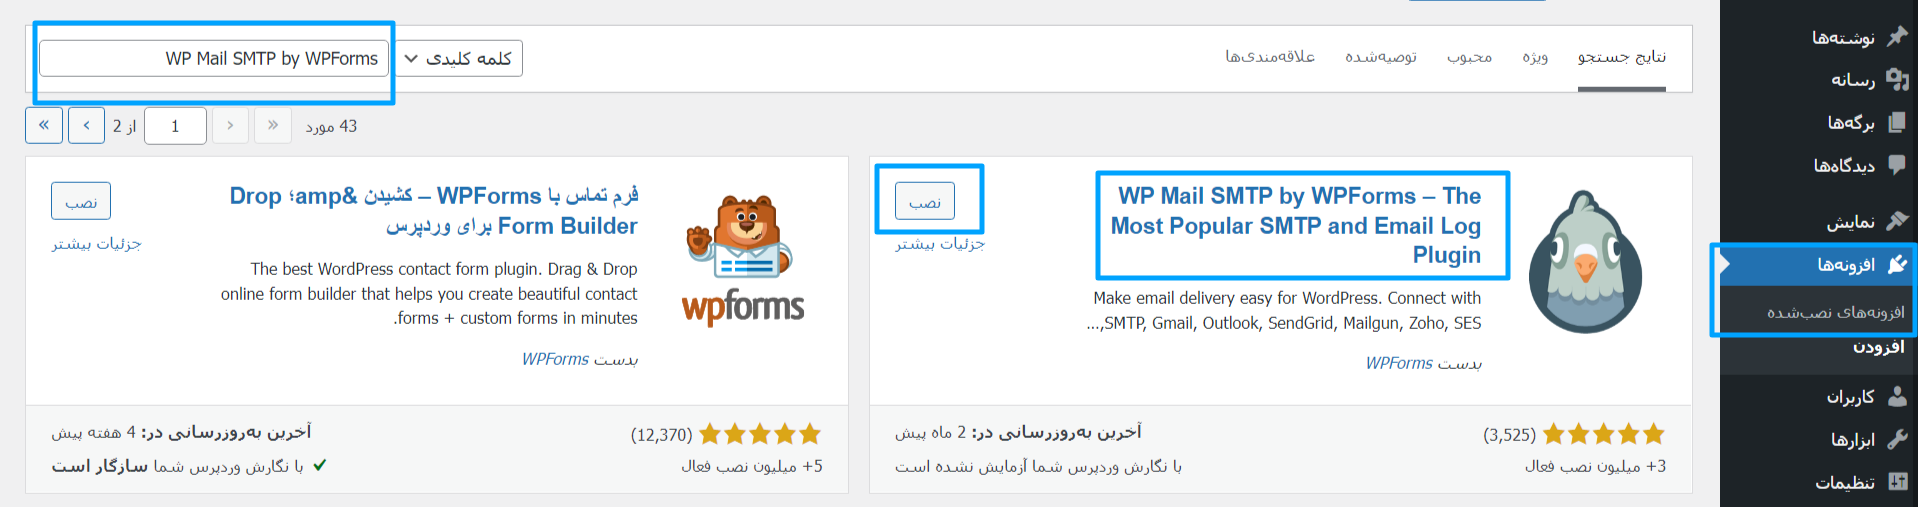  افزونه WP Mail SMTP by WPForms